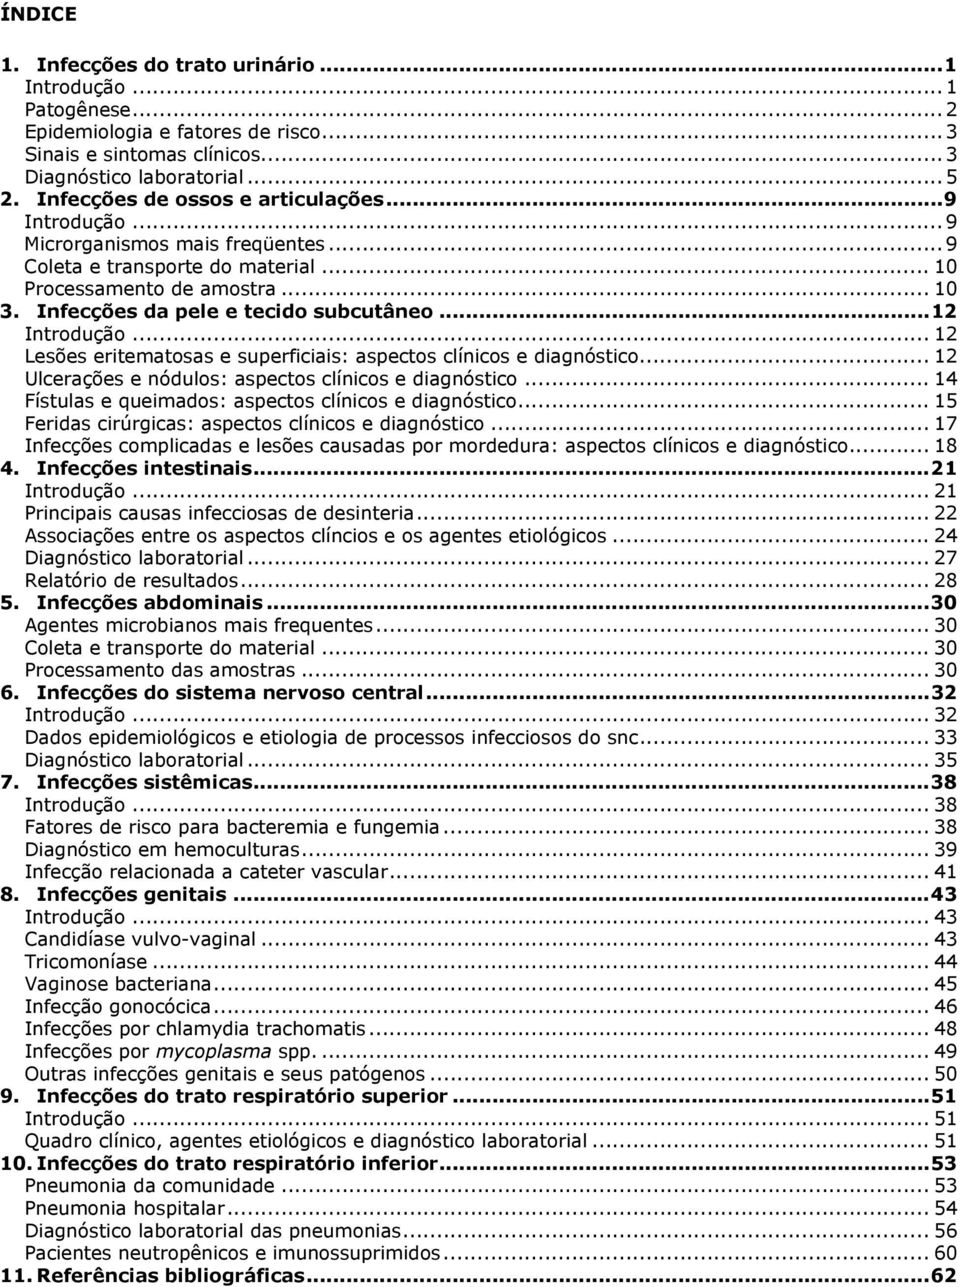 ..12 Introdução... 12 Lesões eritematosas e superficiais: aspectos clínicos e diagnóstico... 12 Ulcerações e nódulos: aspectos clínicos e diagnóstico.